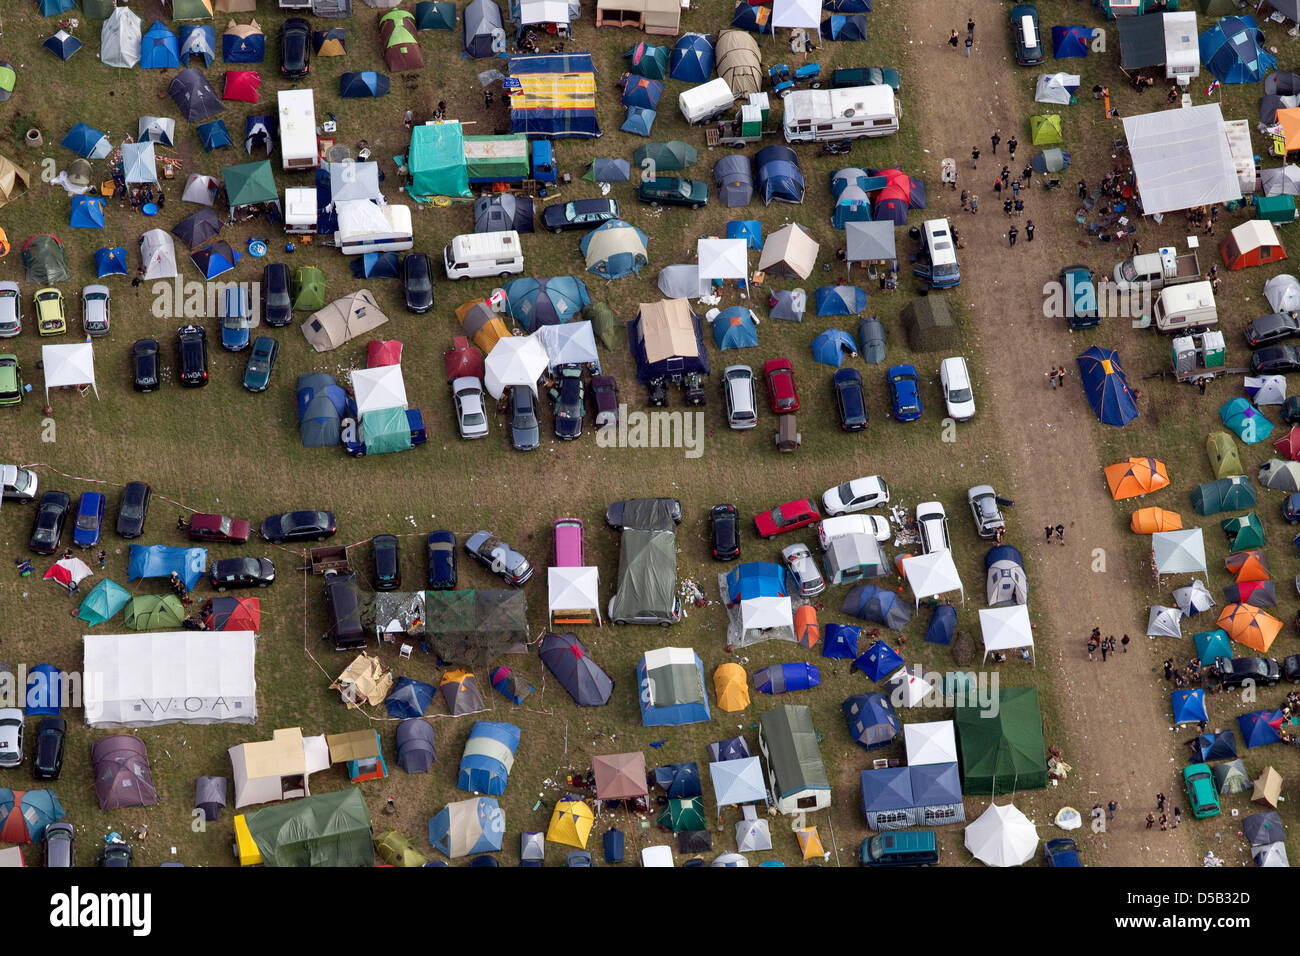 Besucher des Wacken Open Airs haben ihre Zelte auf dem Festivalgelände in Wacken (Kreis Steinburg), Deutschland, 5. August 2010 aufgebaut. Zehntausende von Heavy-Metal-Fans aus der ganzen Welt überrollt die Stadt mit 1900 Einwohnern. Mehr als 100 Bands haben für dieses Jahr, aufgereiht, die spielen auf vier Bühnen mit Sound bis zu 120 Dezibel Ebenen. Foto: Friso Gentsch Stockfoto